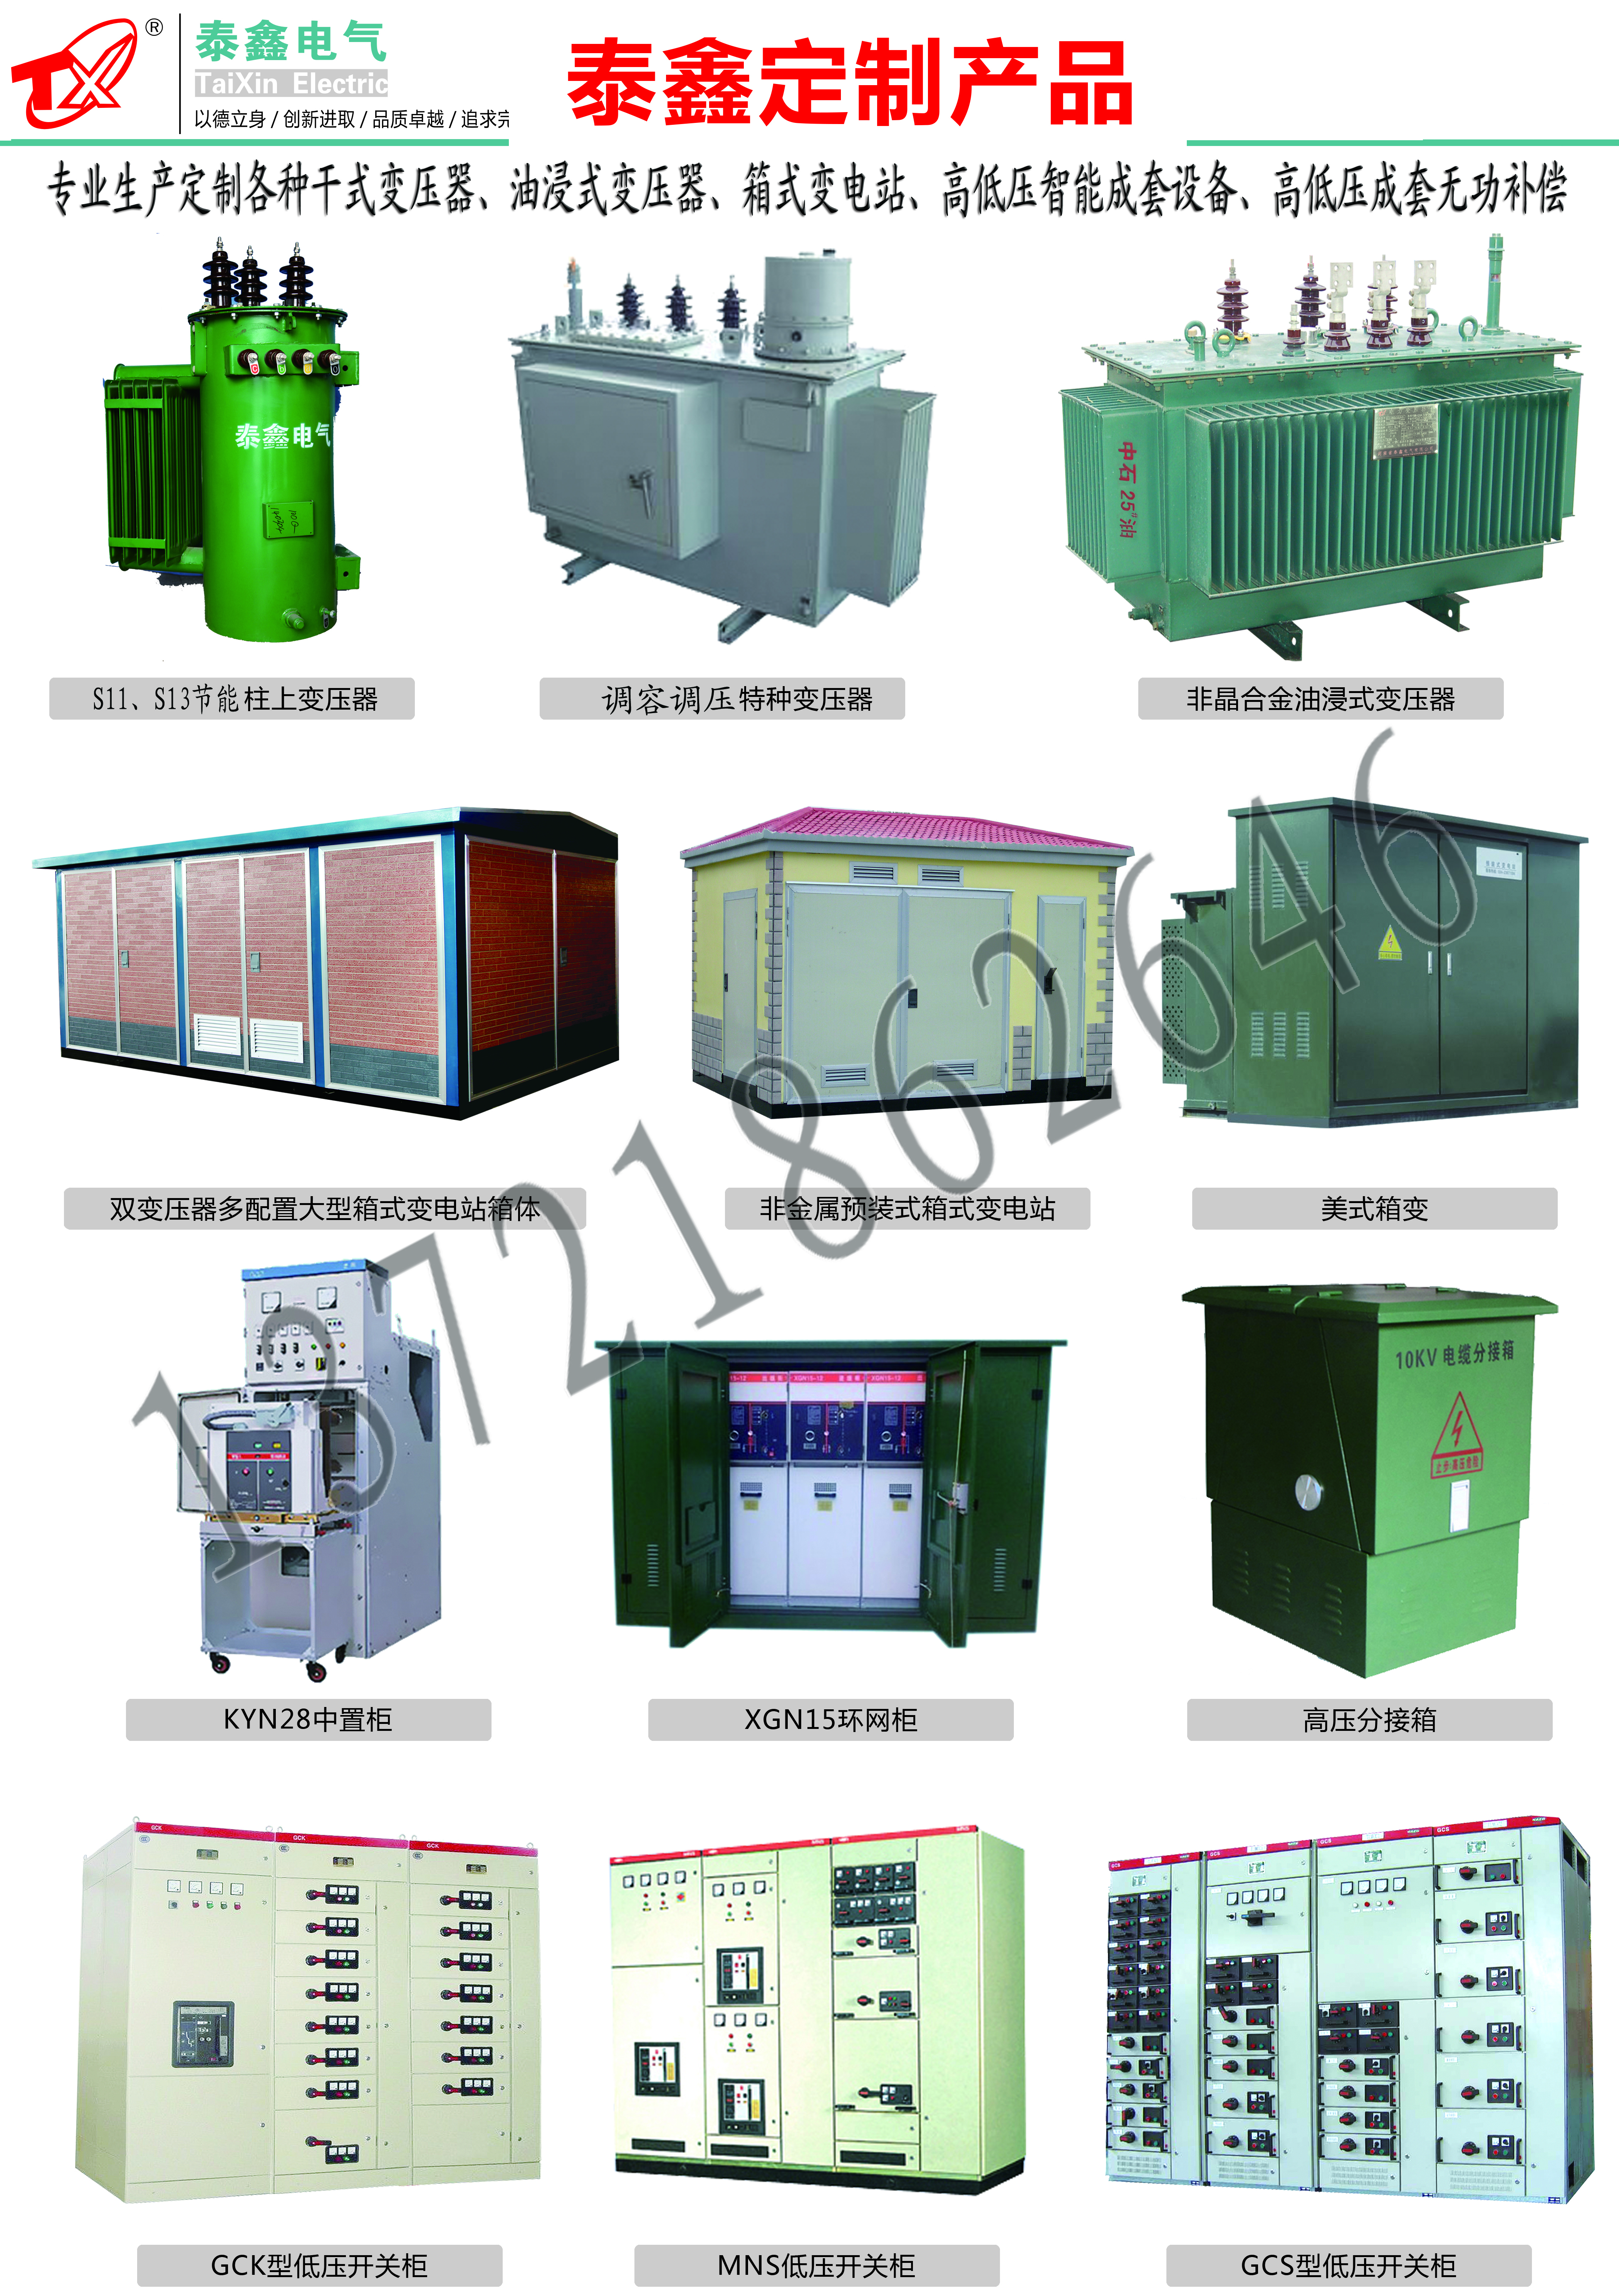 西安SH15-630非晶合金变压器厂家，新型节能变压器生产厂家 非晶合金,变压器,非晶合金变压器,非晶变压器,非晶变压器厂